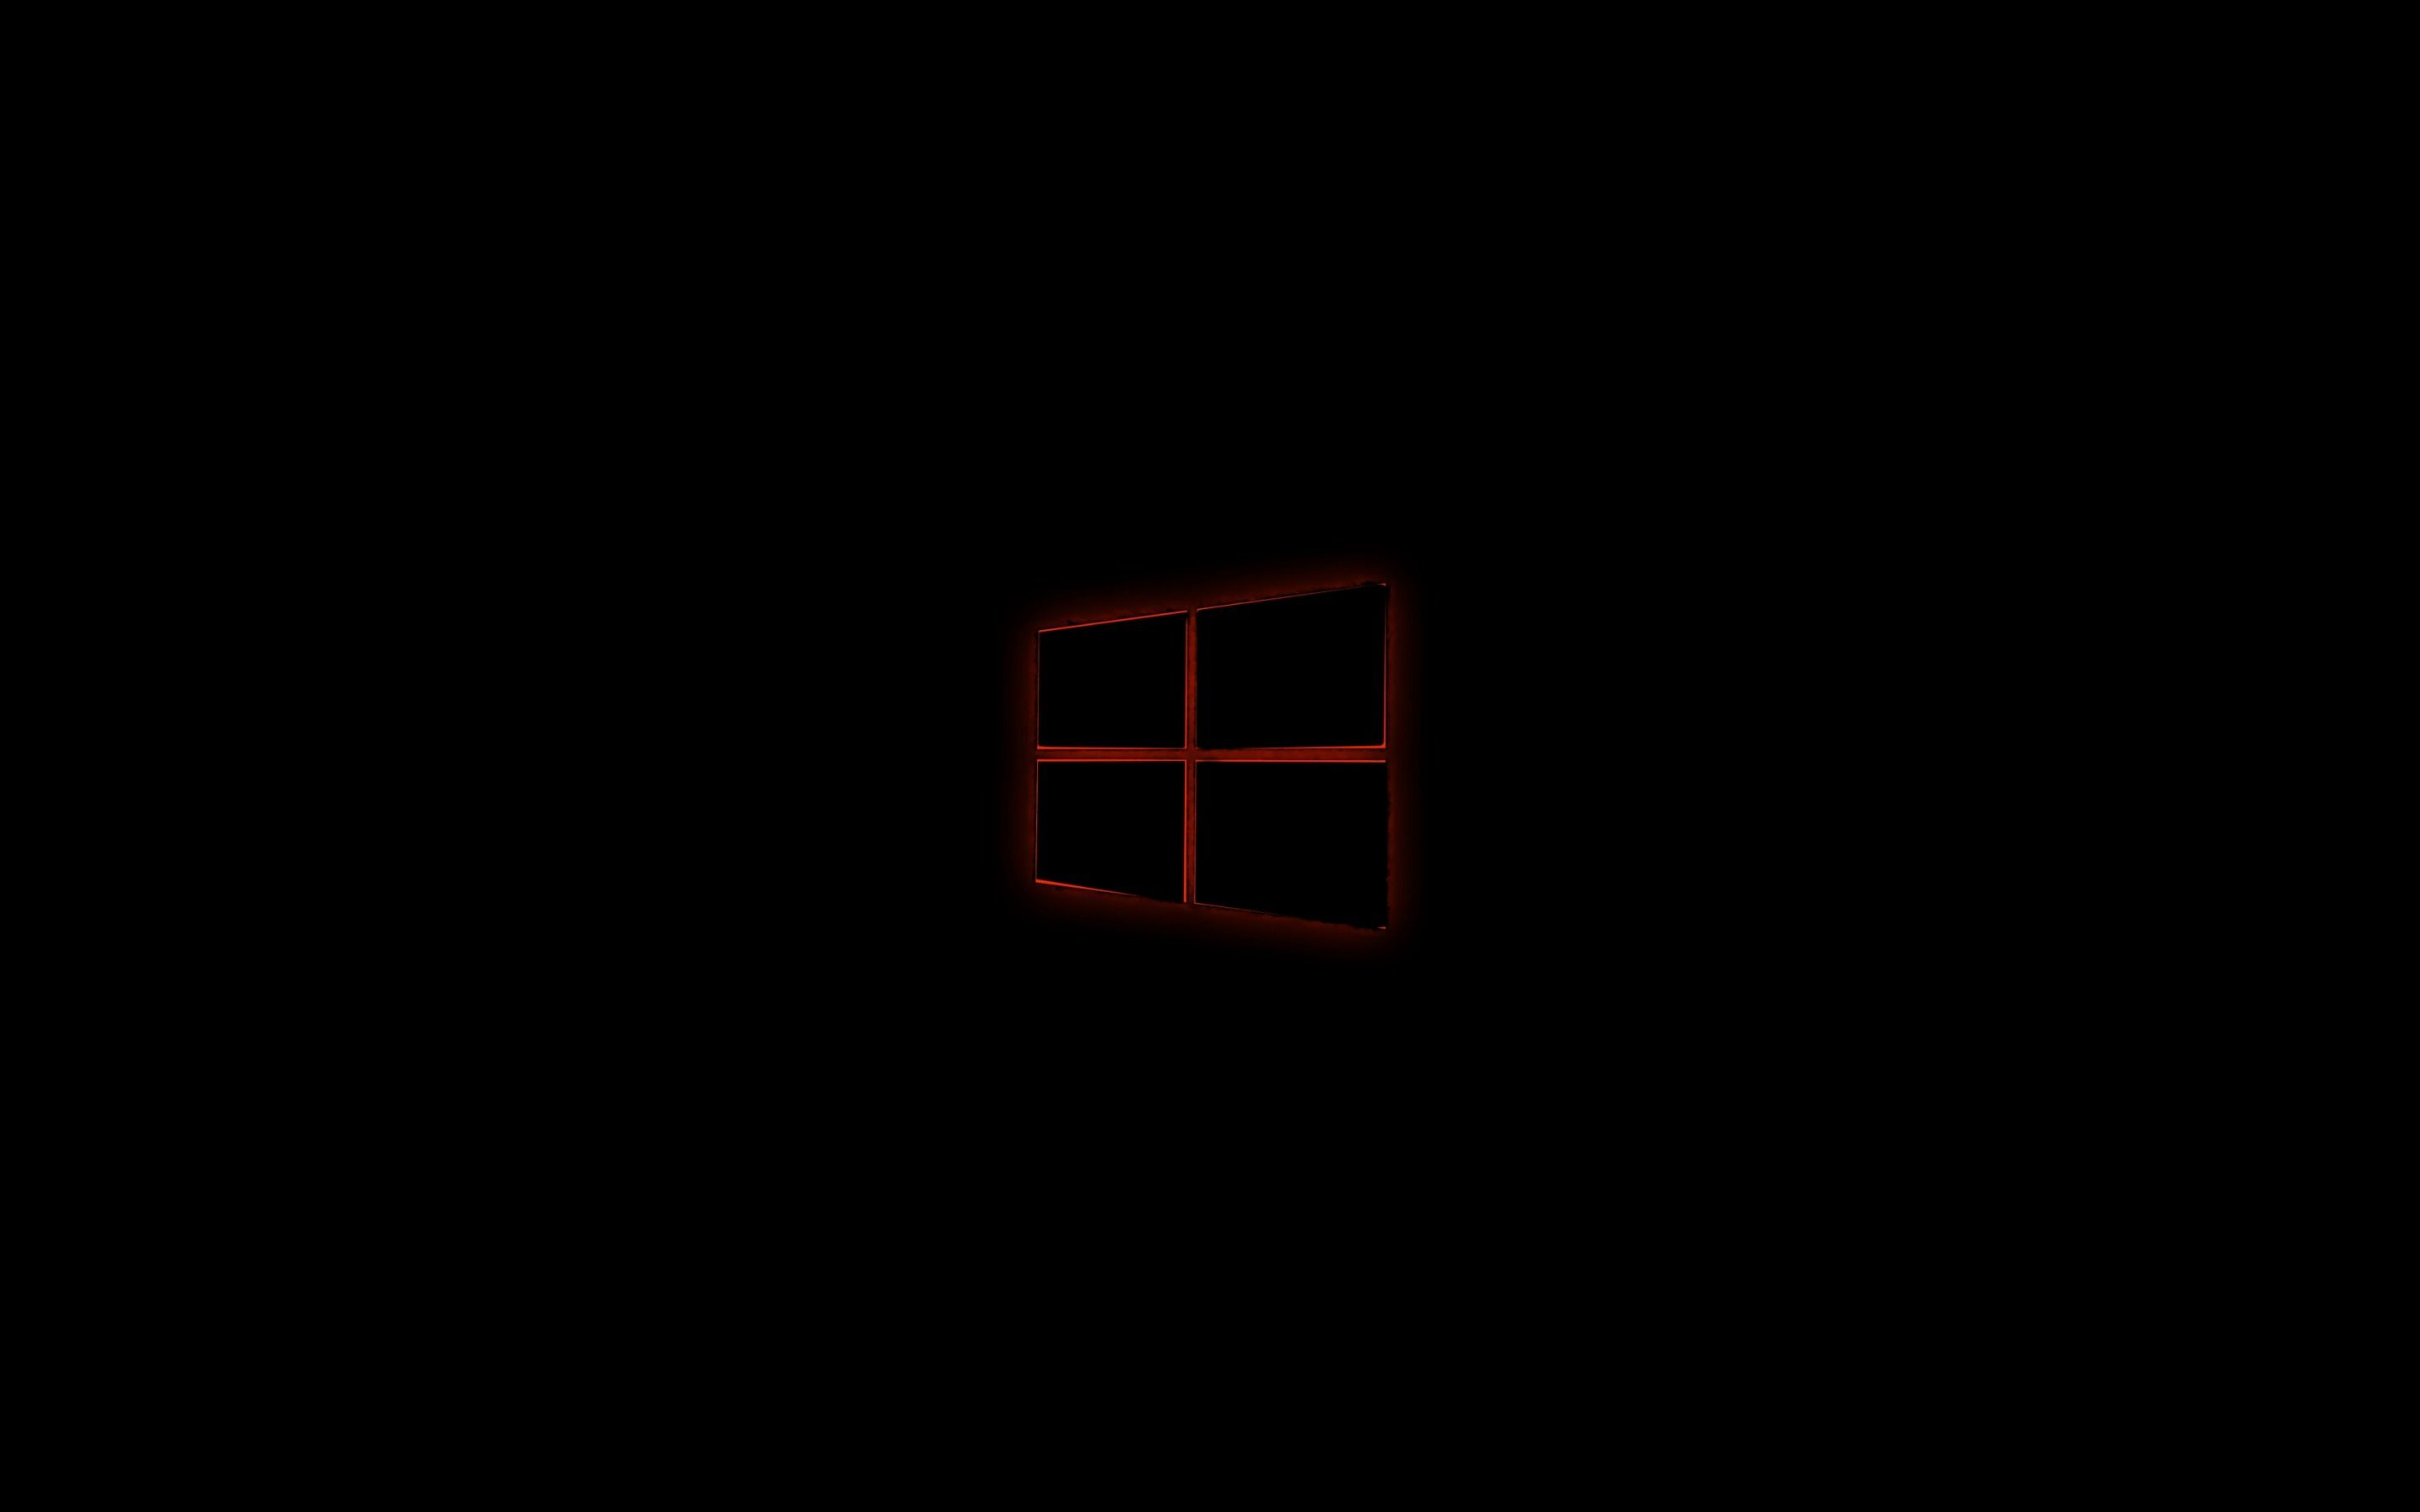 Với phong cách mạnh mẽ và tối giản của Windows 10, hình nền đen là sự lựa chọn hoàn hảo để tăng tính cá nhân và thể hiện phong cách của bạn. Hãy cùng chiêm ngưỡng hình nền Windows 10 đen tuyệt đẹp trong bộ sưu tập này để trang trí màn hình của bạn.